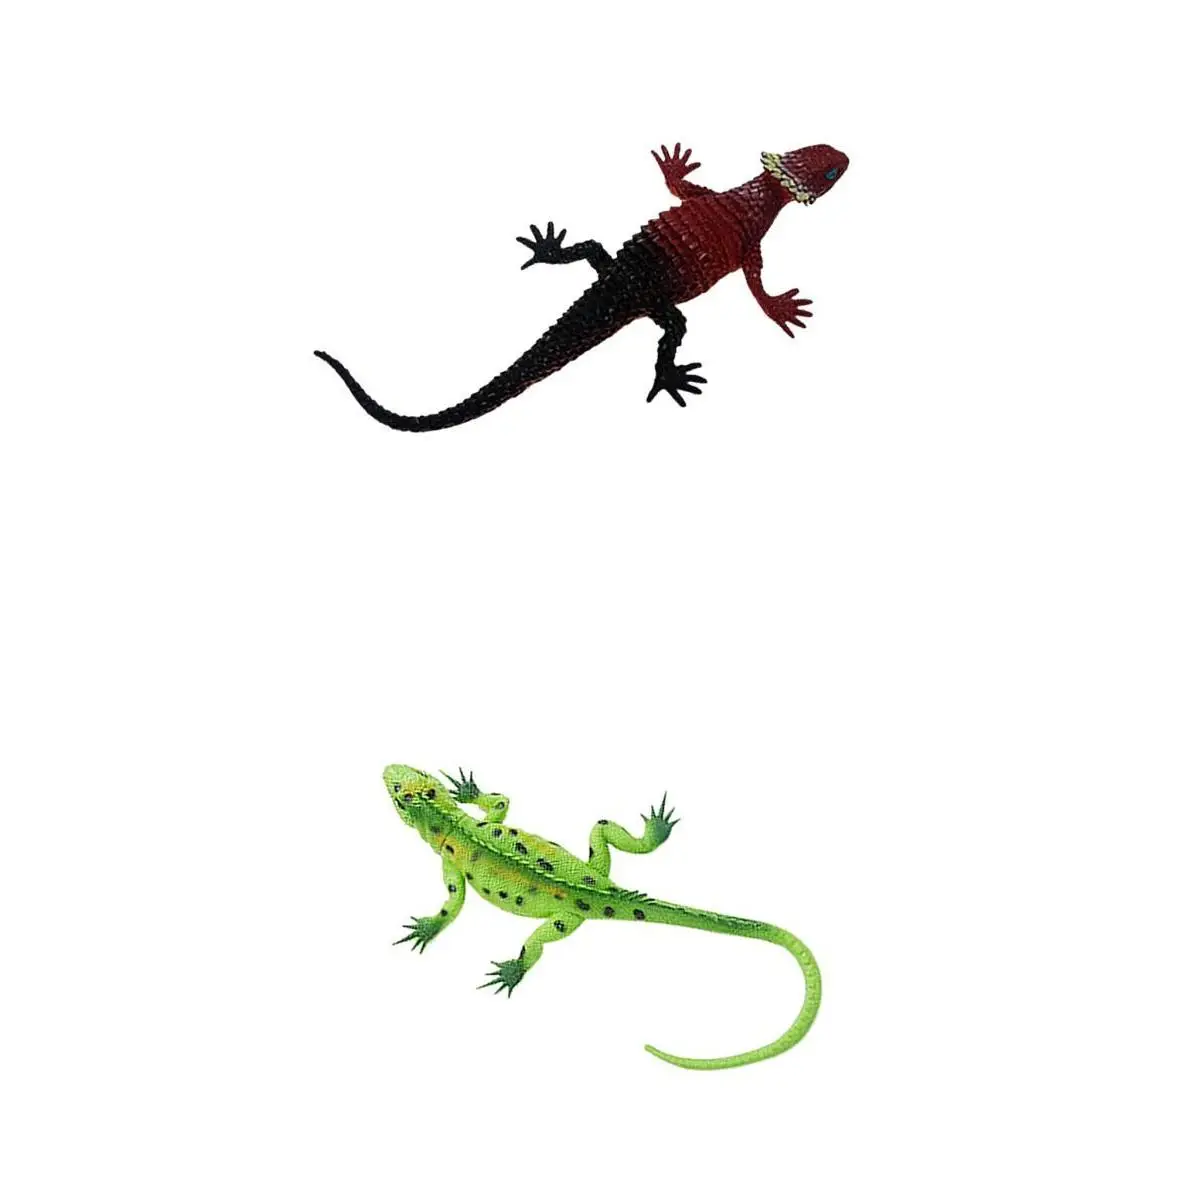 2 X Bunte Lebendige Reptil Tier Gummi Eidechse Modell Pädagogisches Spielzeug